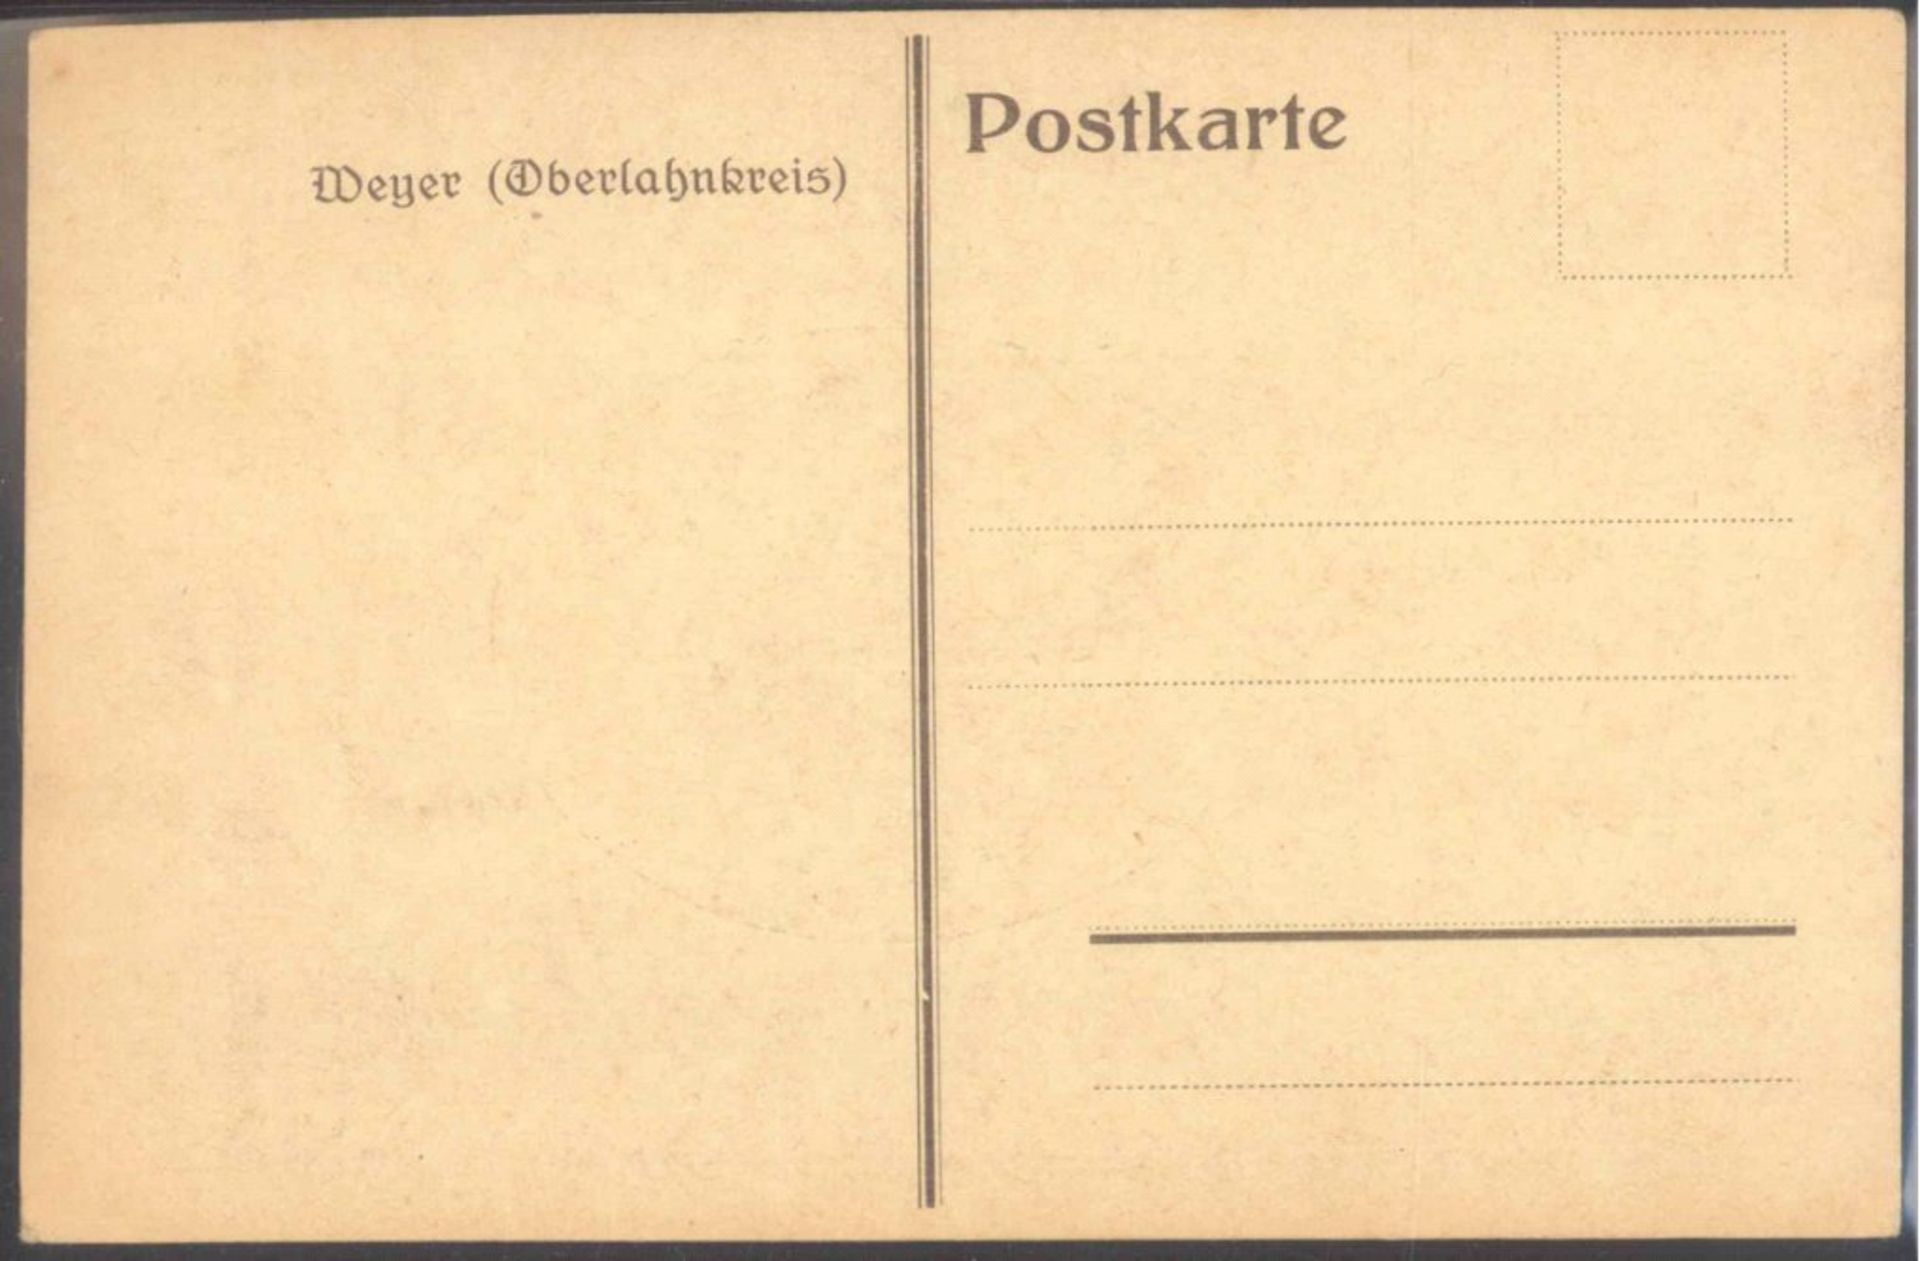 WEYER, Oberlahnkreis, Circa aus 1905-1925schwarz/weiß Ansichtskarte mit kleiner (Oval)Fotographie - Bild 2 aus 2